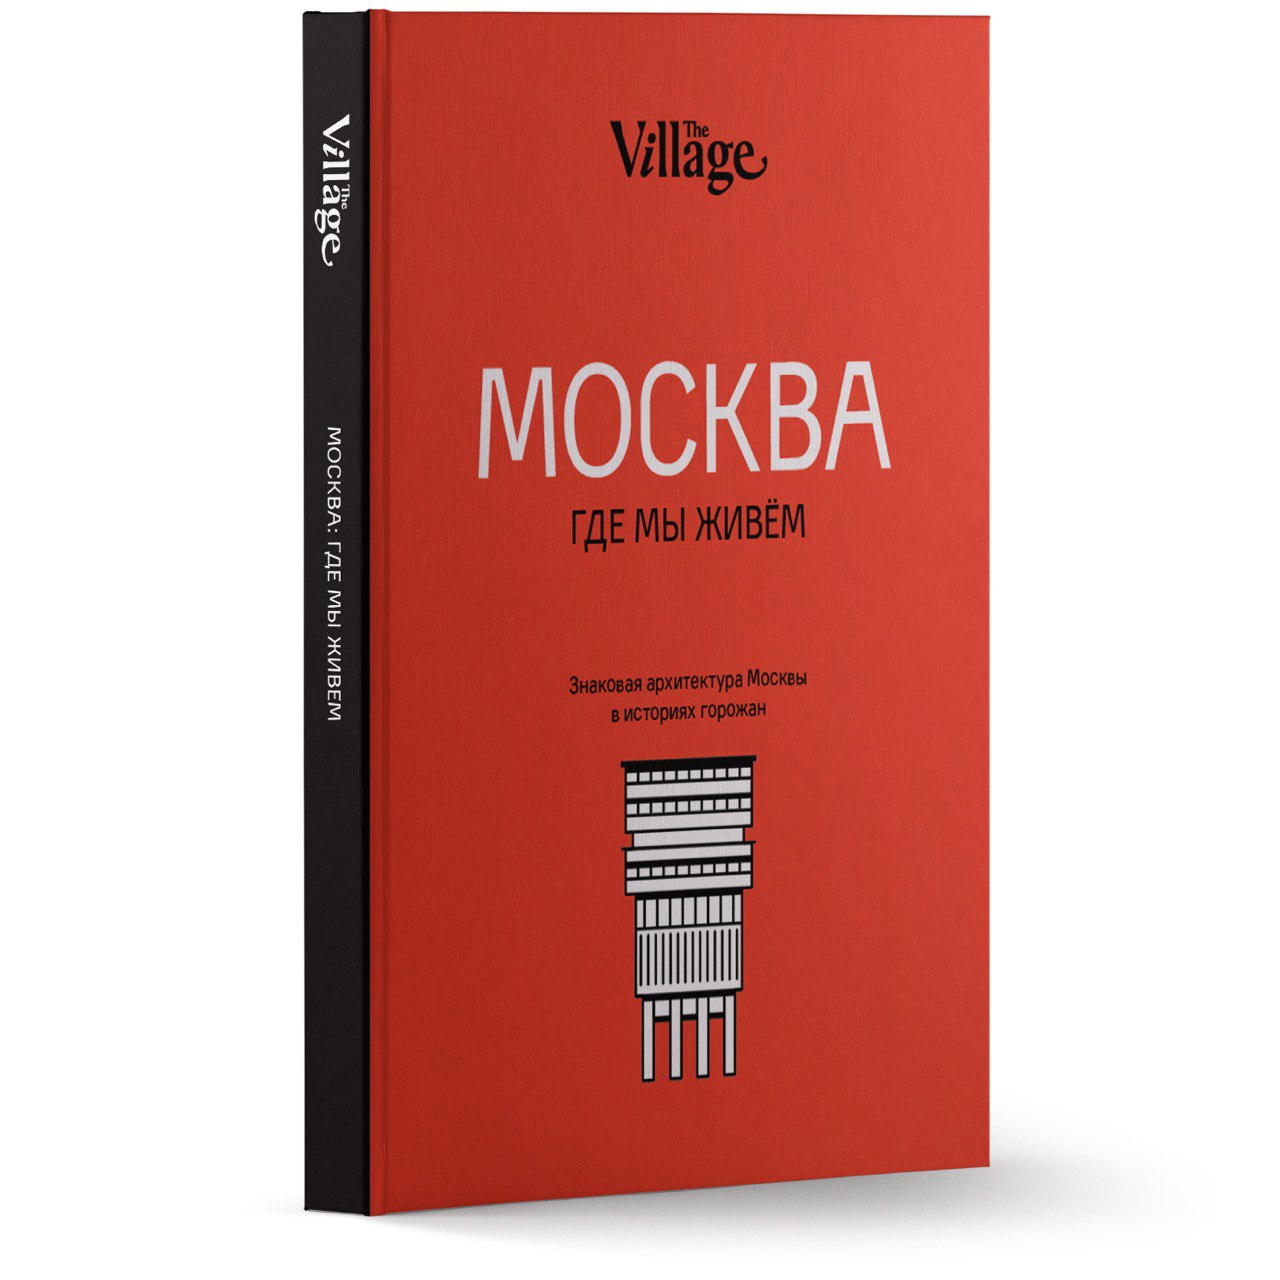 Купить книгу в москве в интернет магазине. Где мы живем? Книга. Москва где мы живем книга. The Village обложка журнала. Где в Москве выпускают книги.